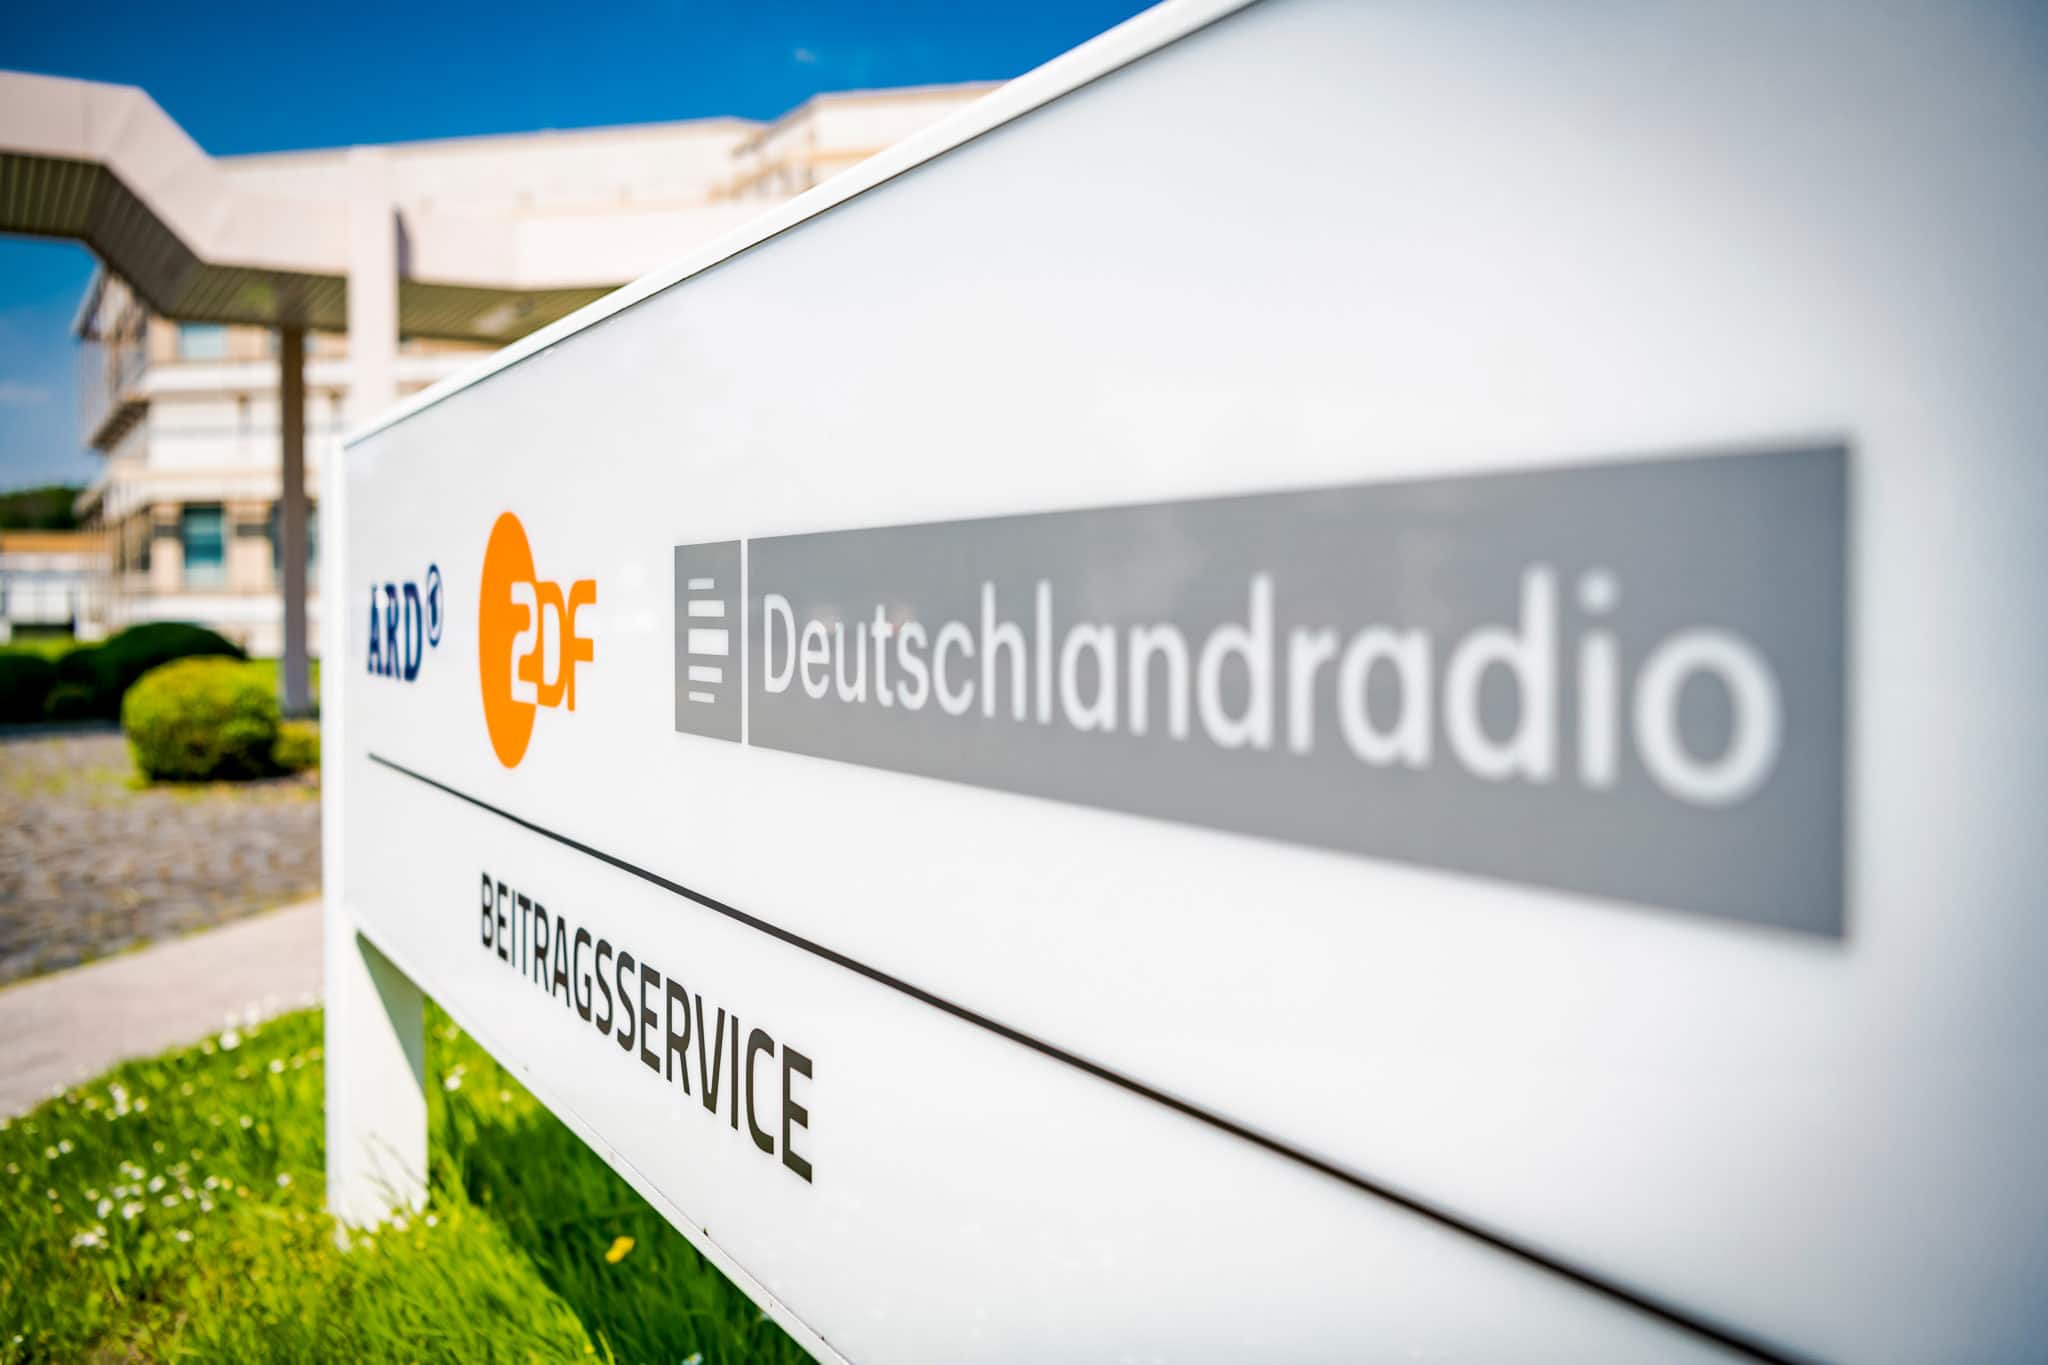 ARD ZDF Deutschlandradio Beitragsservice, Schild mit Logo vor dem Gebäude | Bild: ARD ZDF Deutschlandradio Beitragsservice/Ulrich Schepp